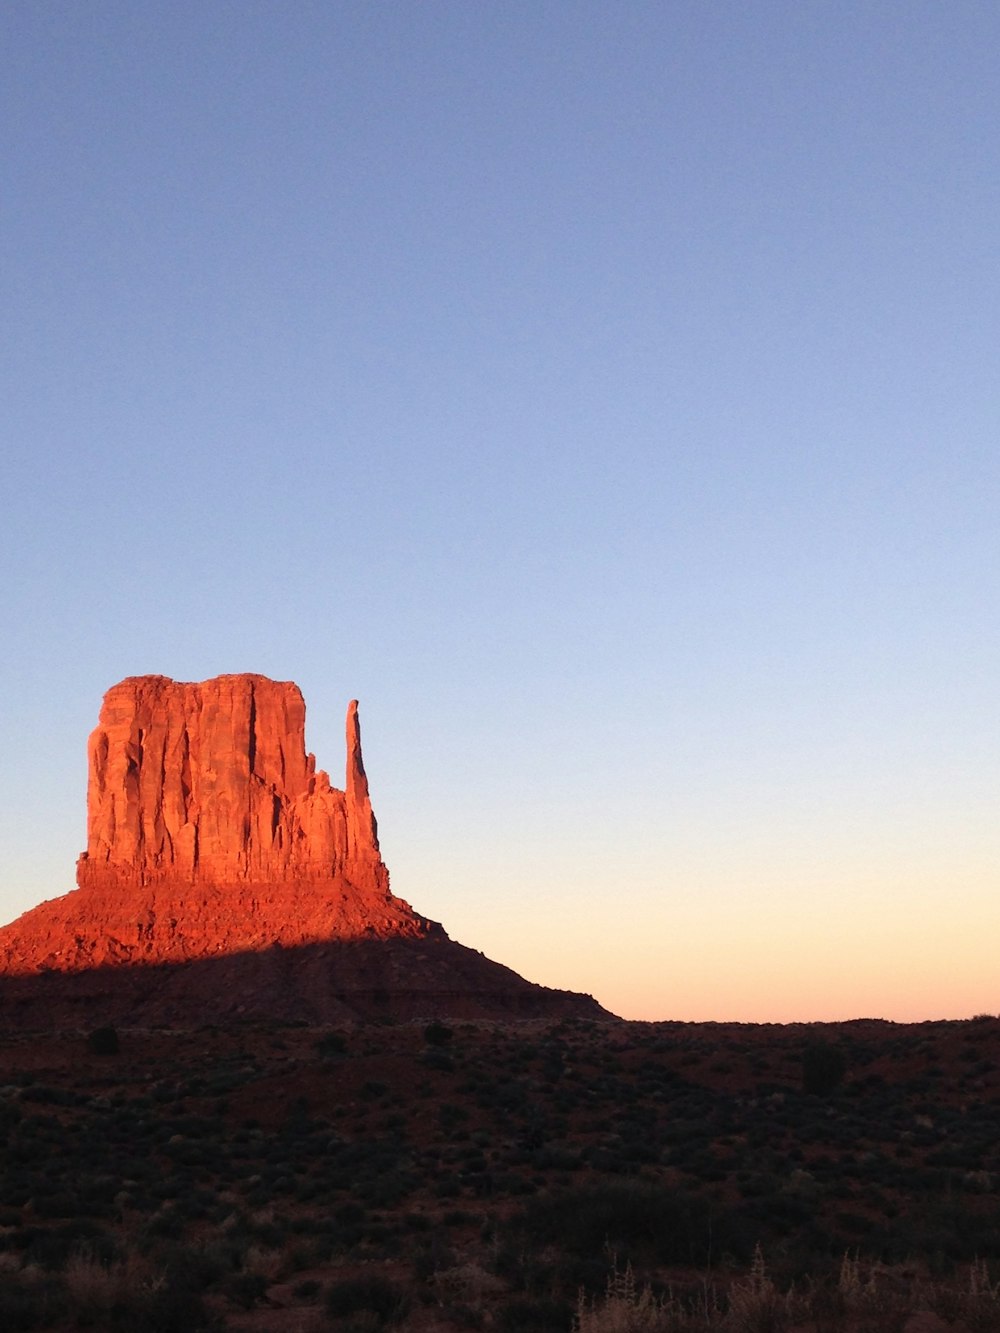 Eine hohe rote Felsformation mitten in der Wüste